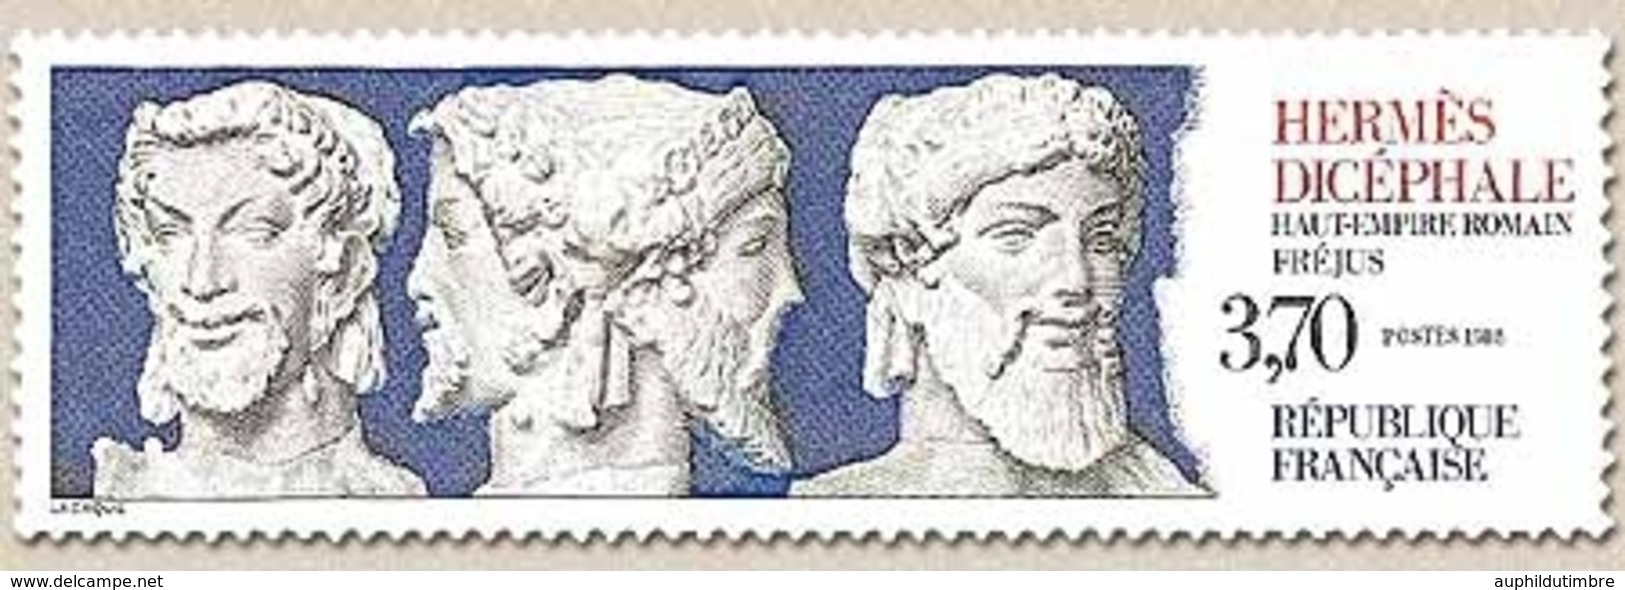 Série Touristique. Hermès Dicéphale (Haut Empire Romain) Fréjus  3f.70 Gris, Bleu Et Rouge Y2548 - Unused Stamps